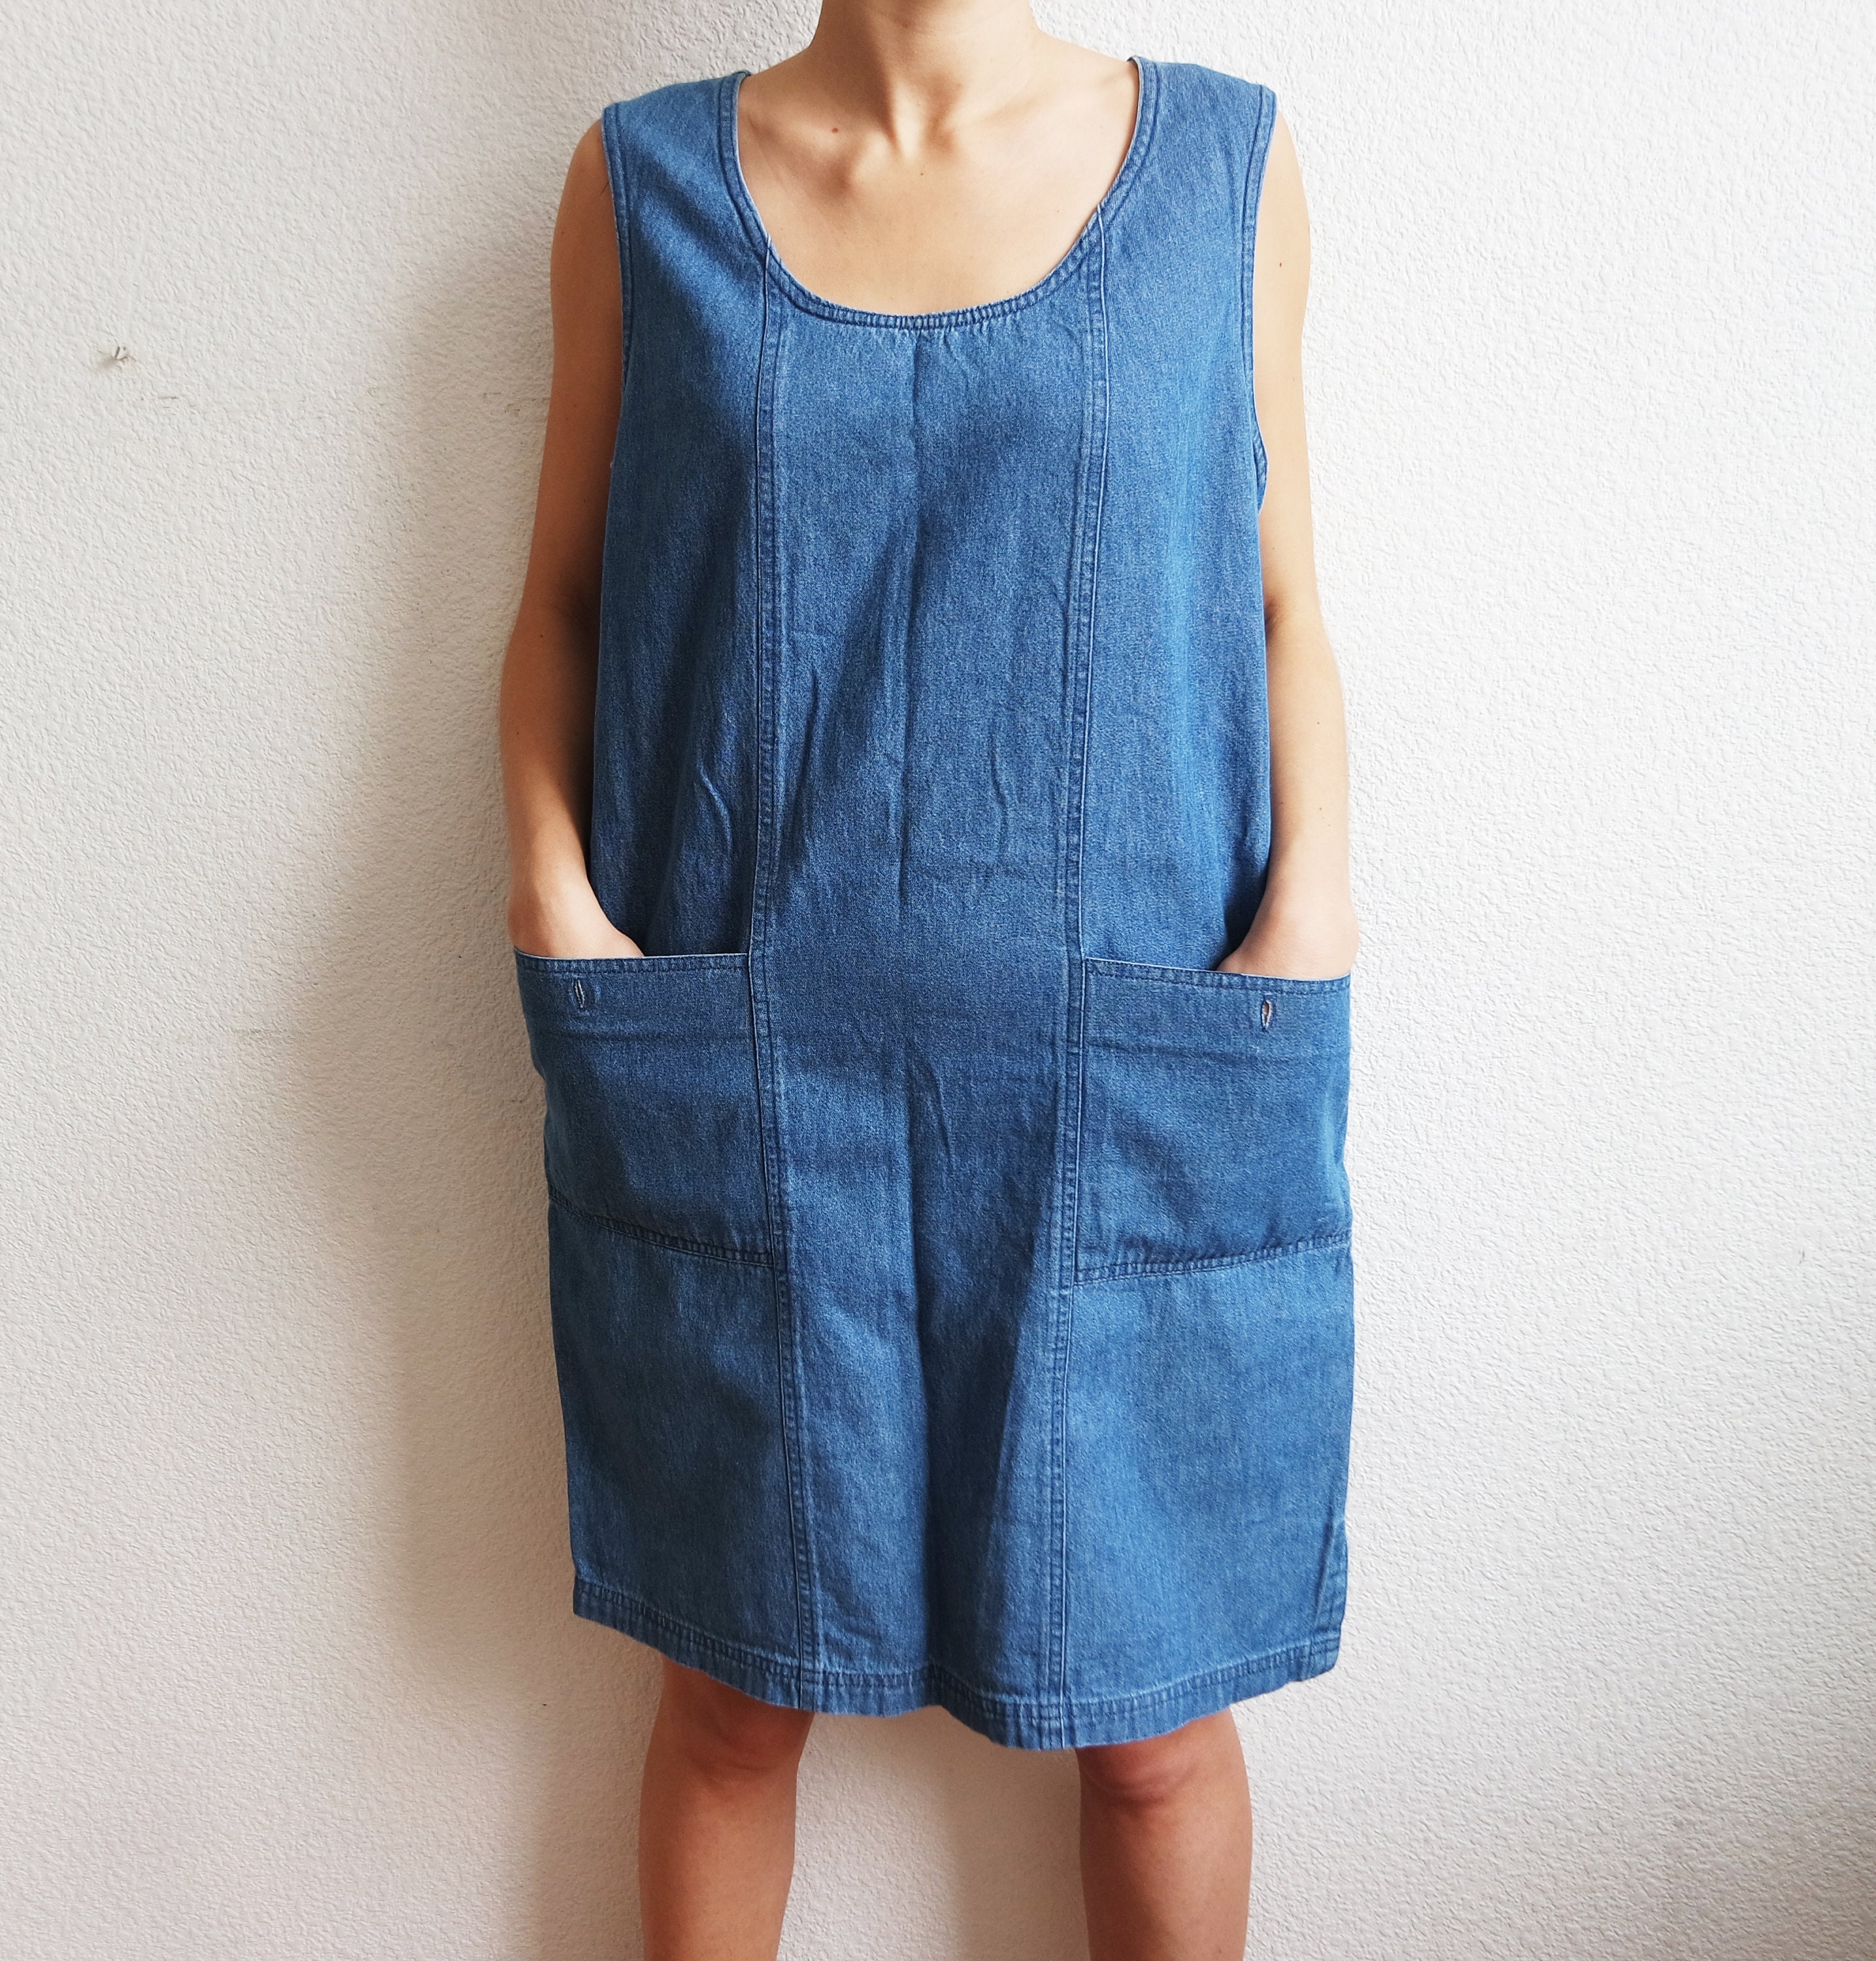 Vintage Denim Dress Blue Sarafan Shirt Dress Denim Short - Etsy